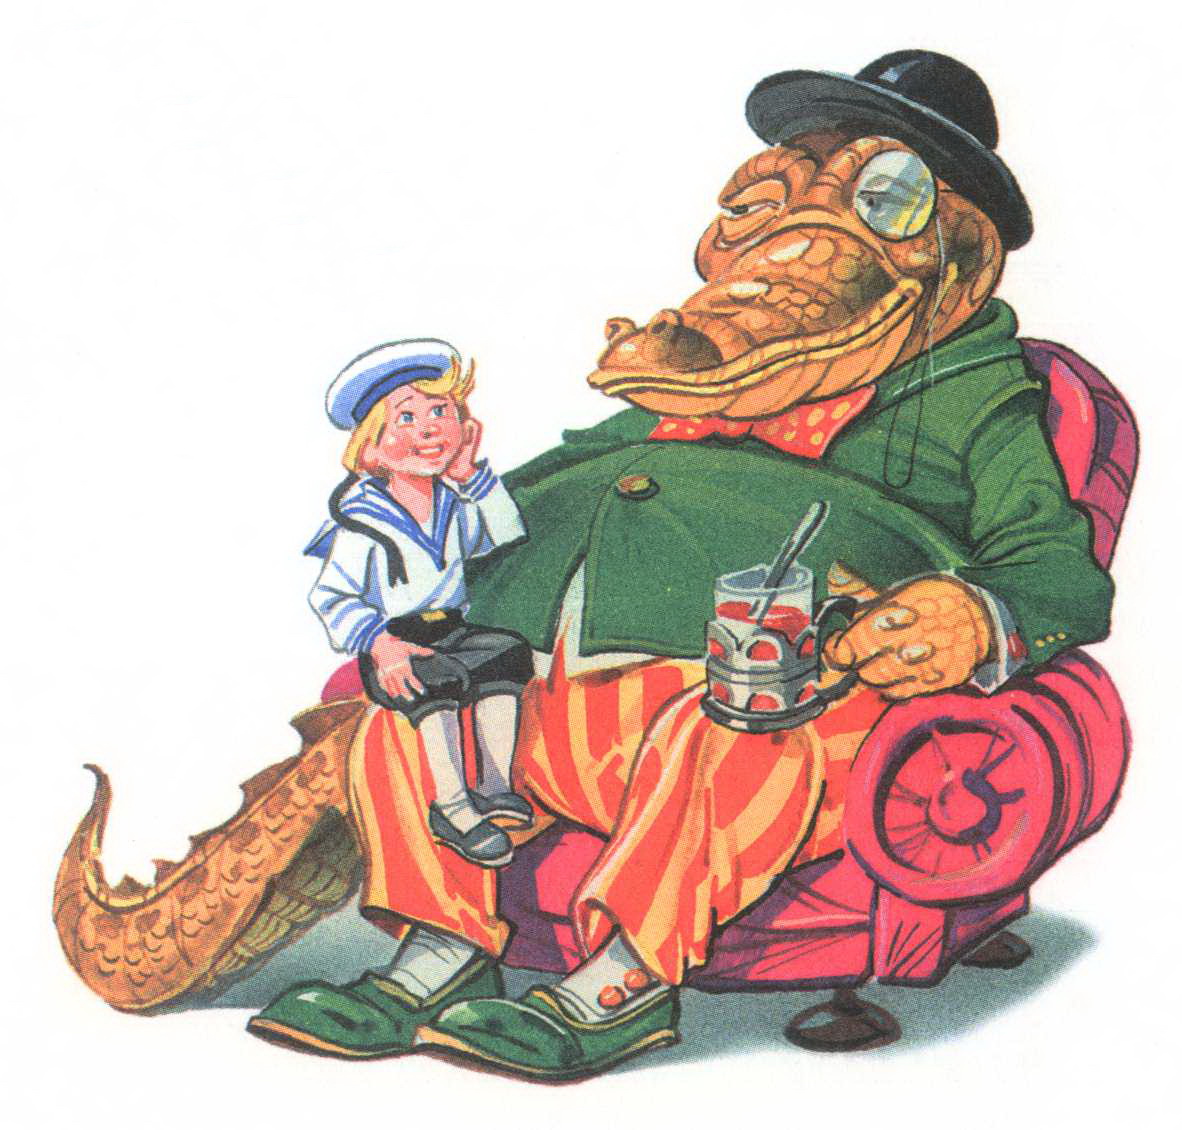 Иллюстрация к сказке "Крокодил" Чуковский